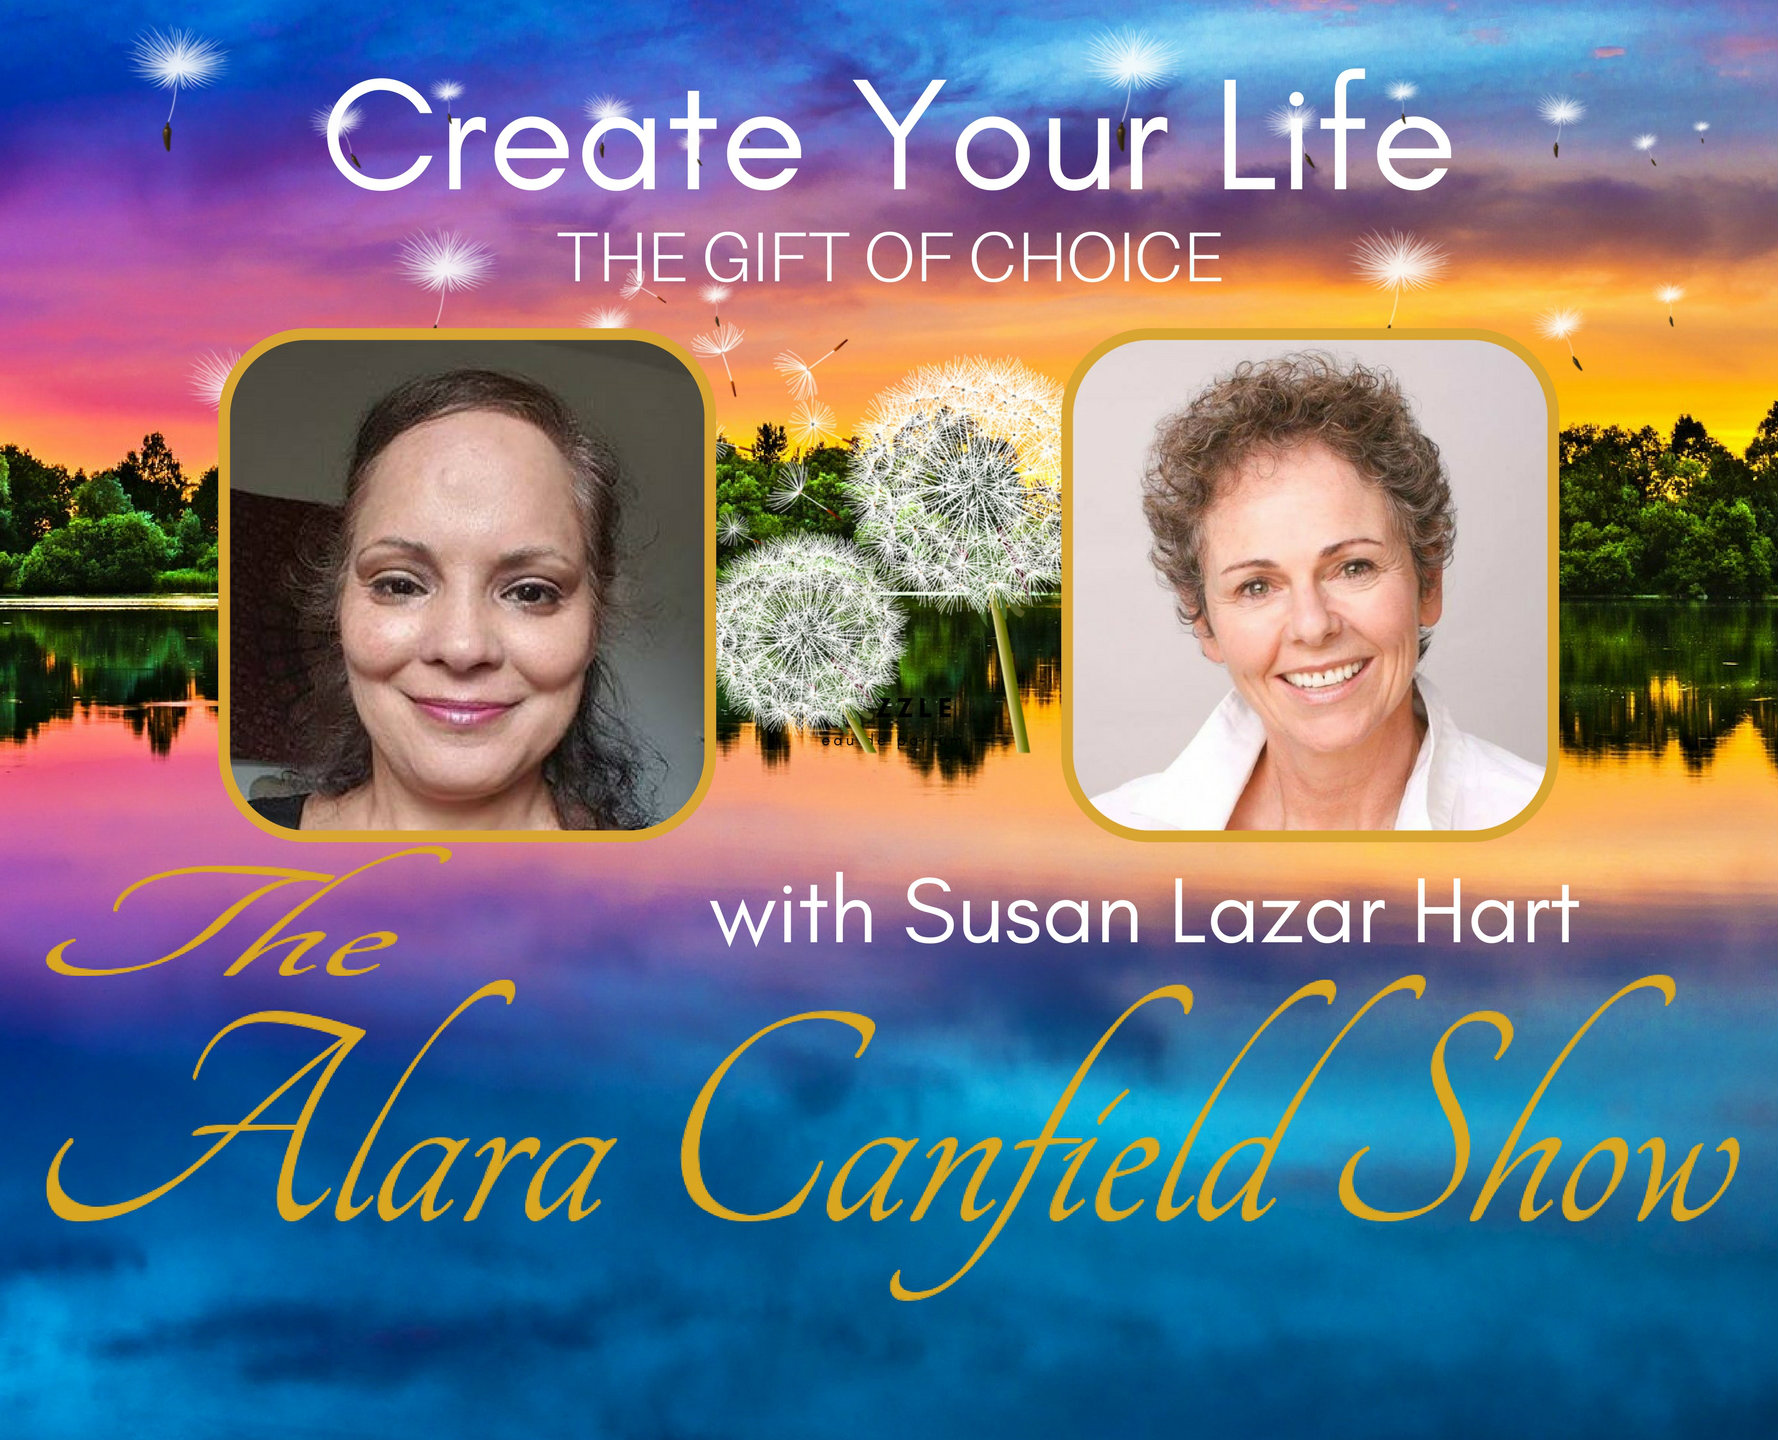 Create Your Life with Susan Lazar Hart April 26